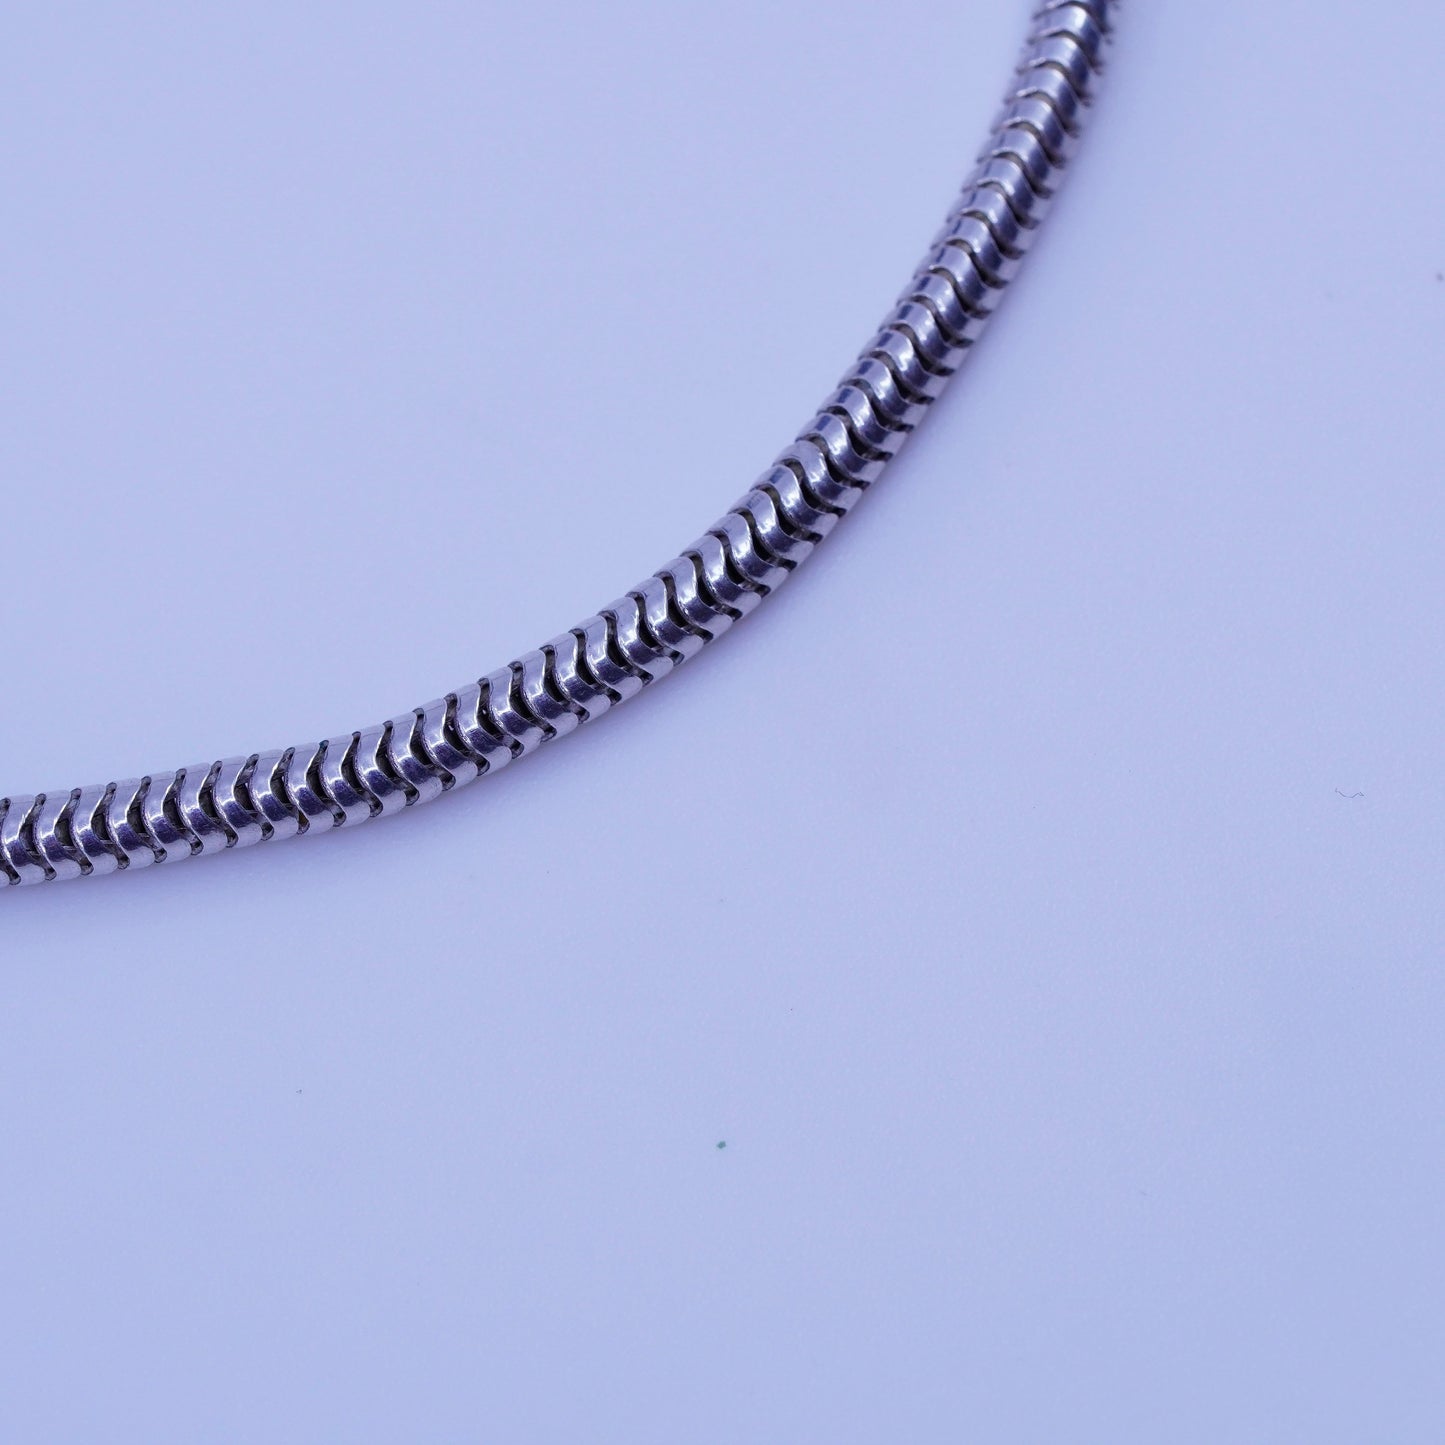 7.5”, 2mm, Sterling 925 silver handmade bracelet, bold snake link chain